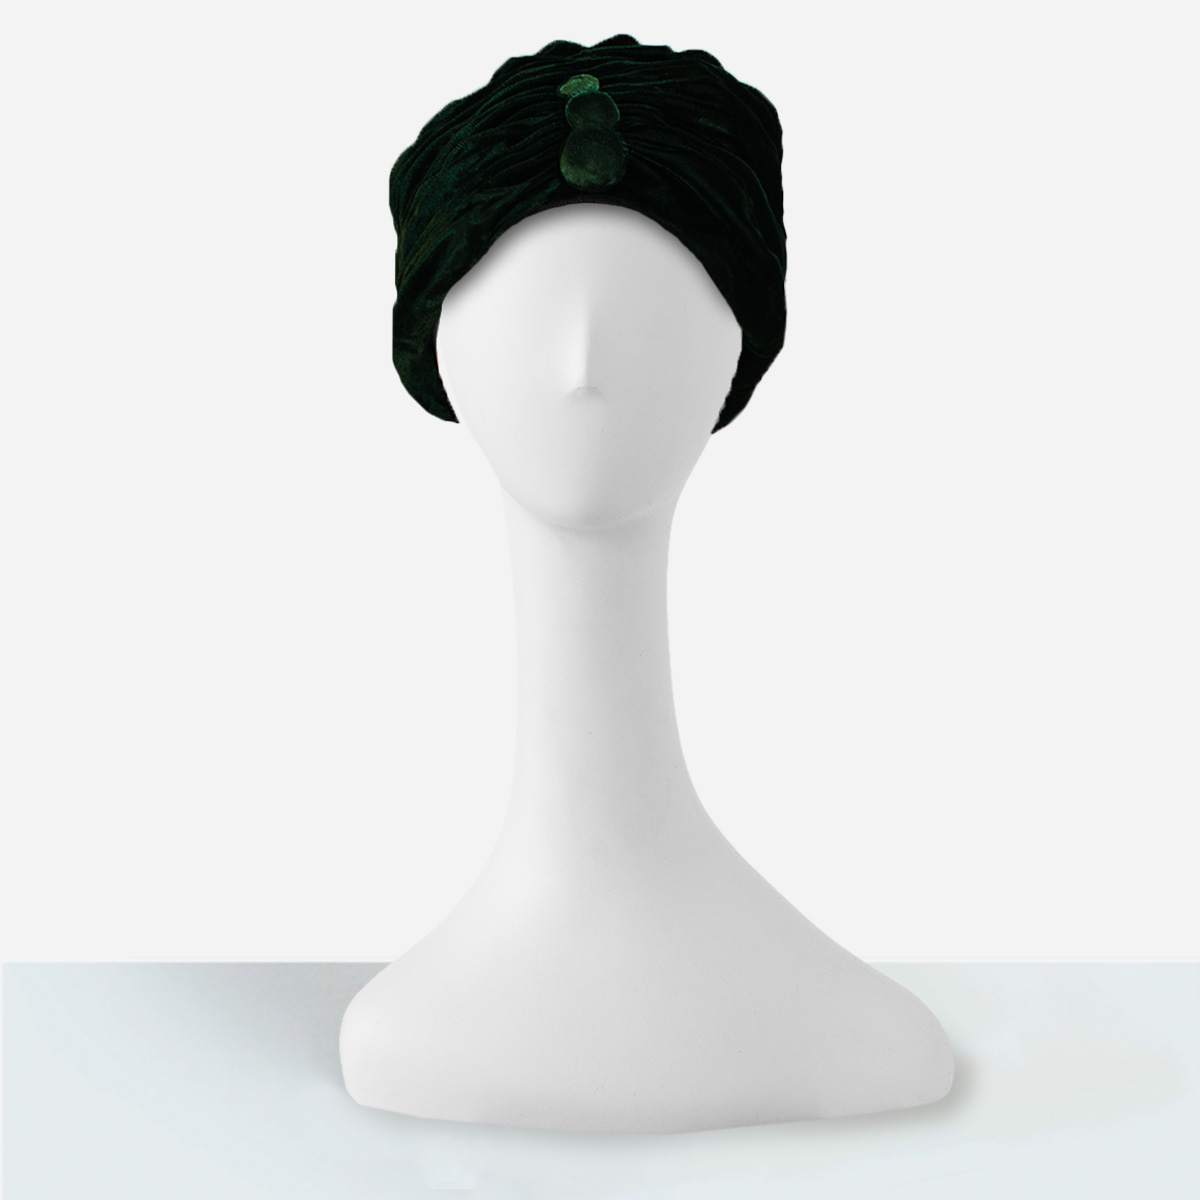 Vintage green turban